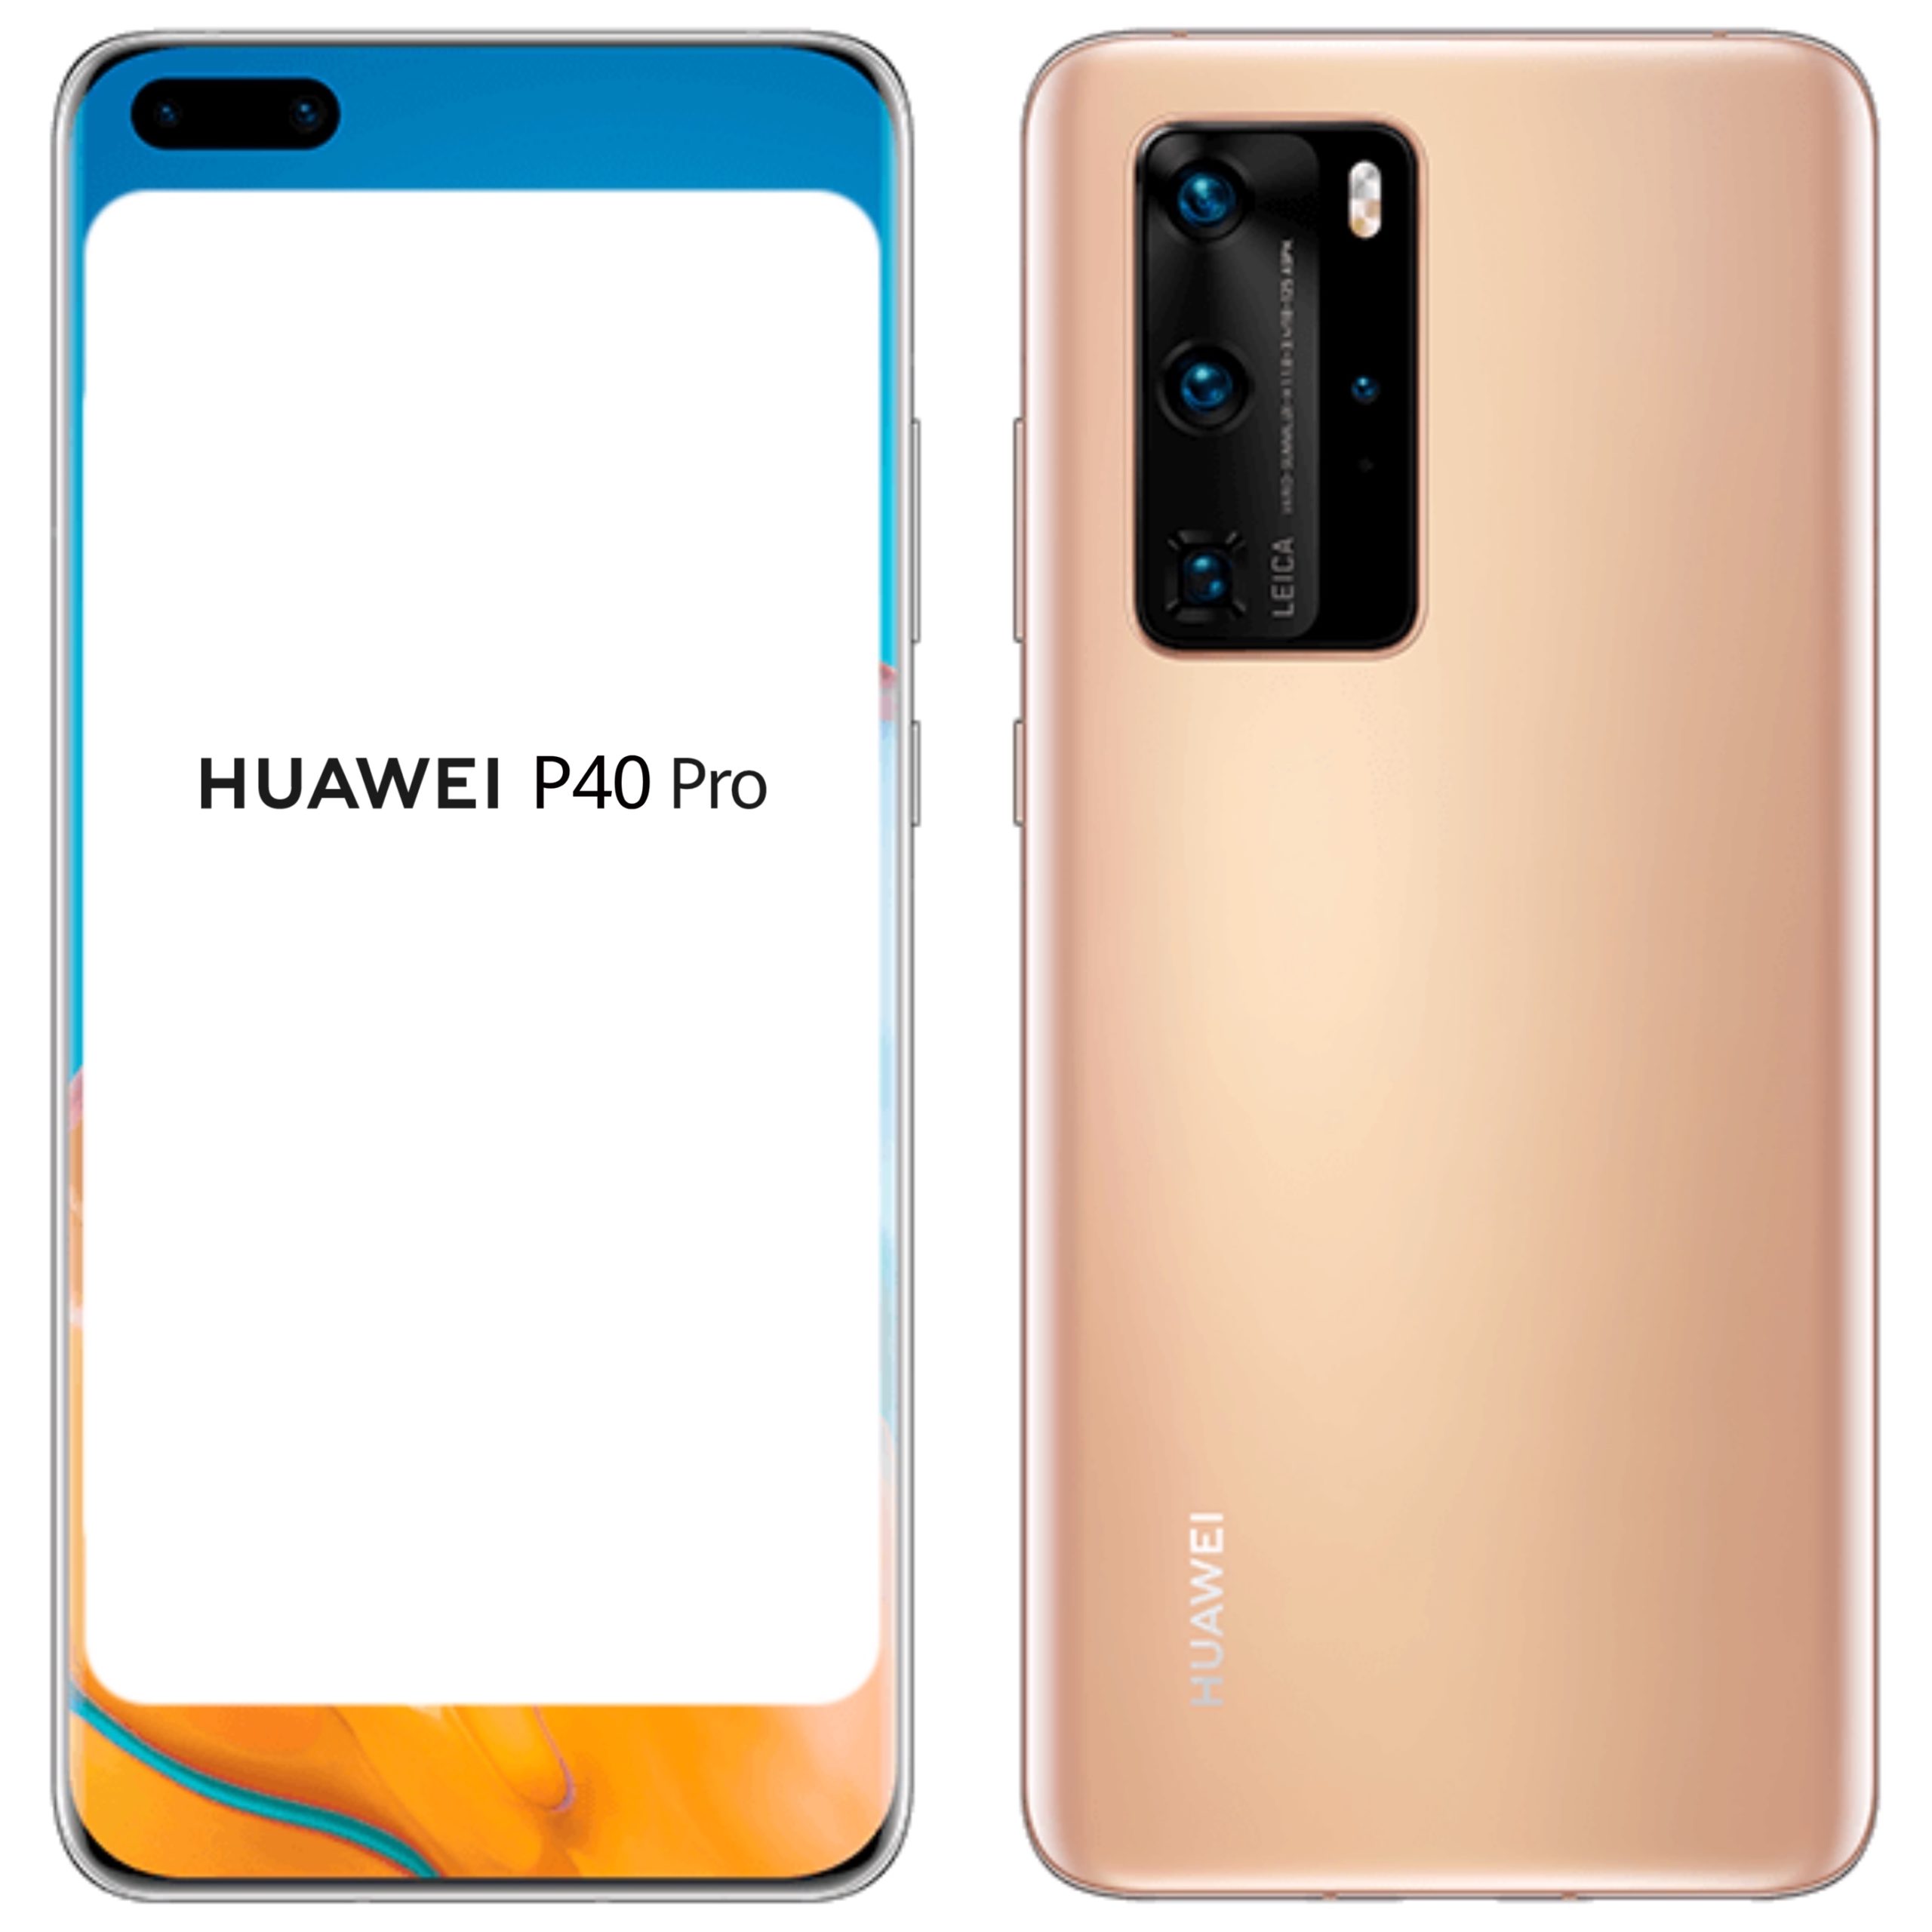 Rumores Huawei P40 y P40 Pro, características, precio y fecha de lanzamiento